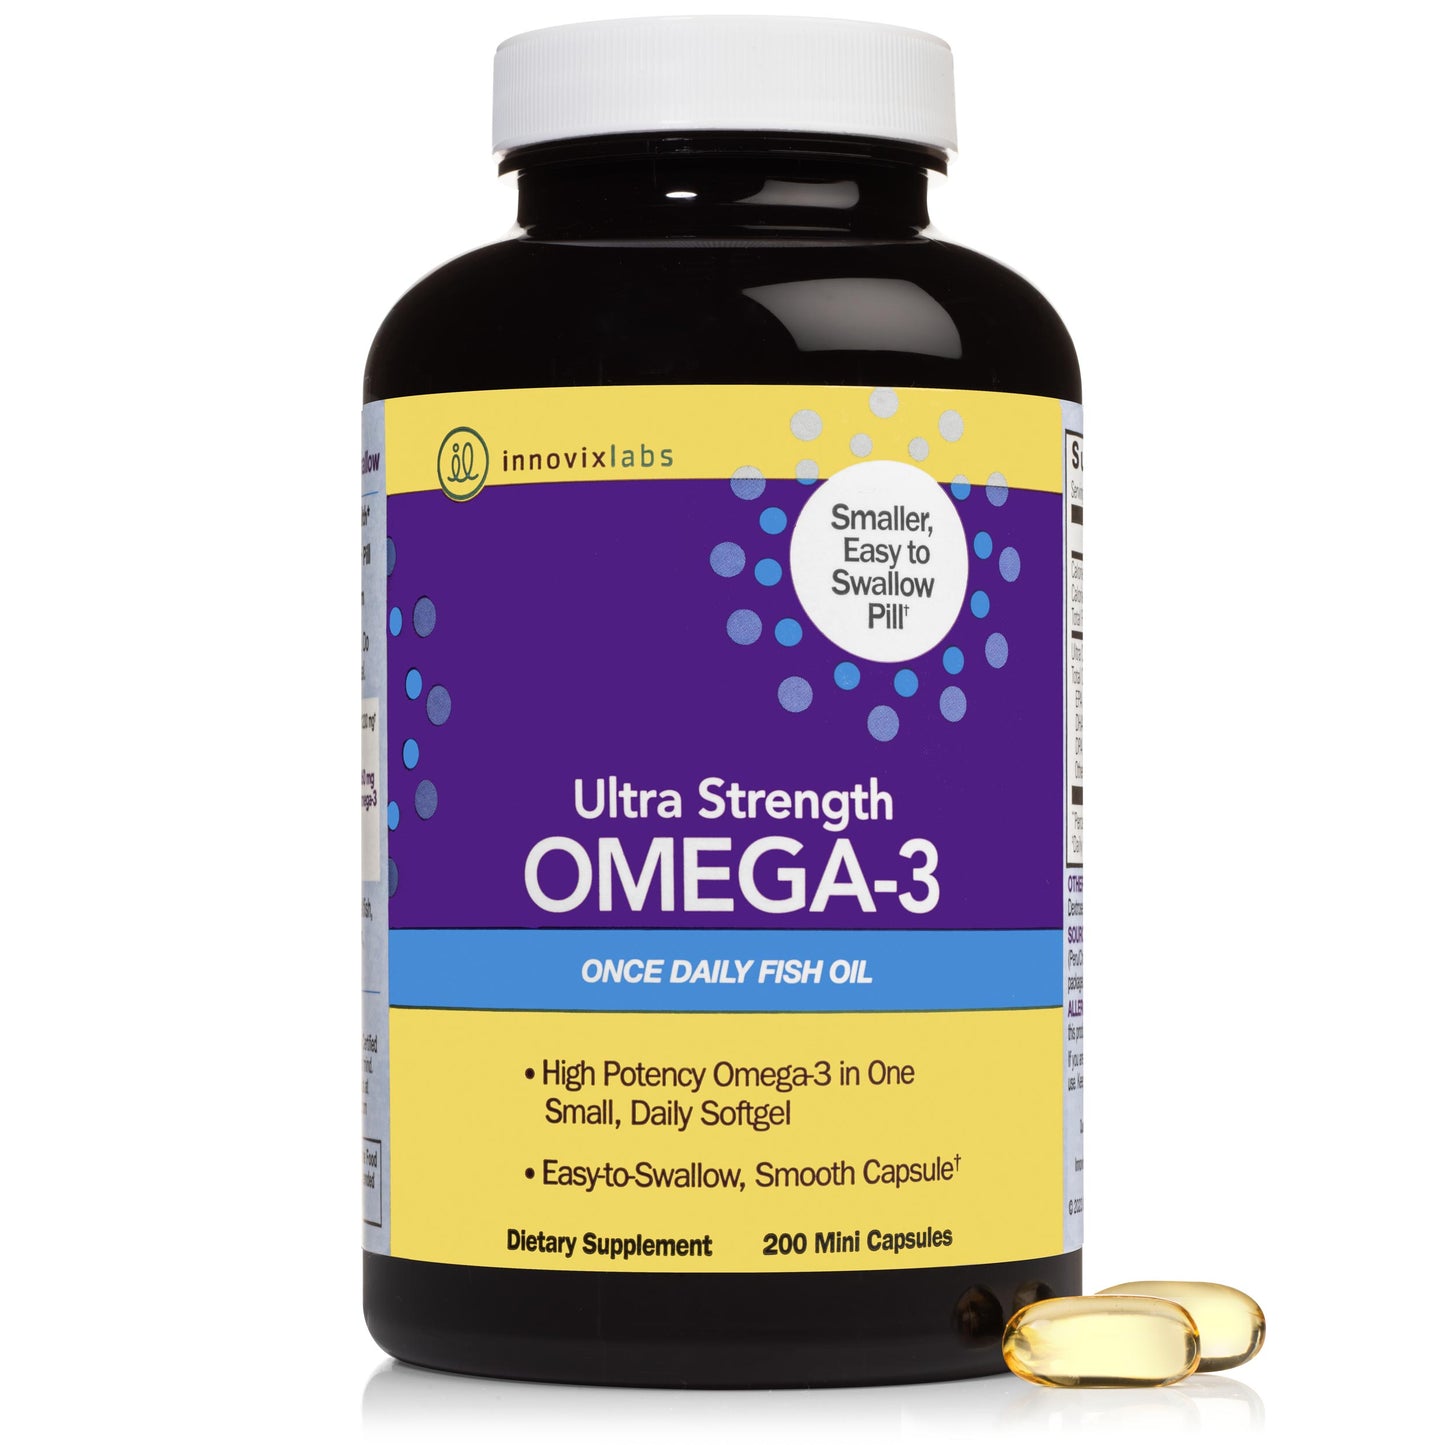 Ultra Strength Omega-3